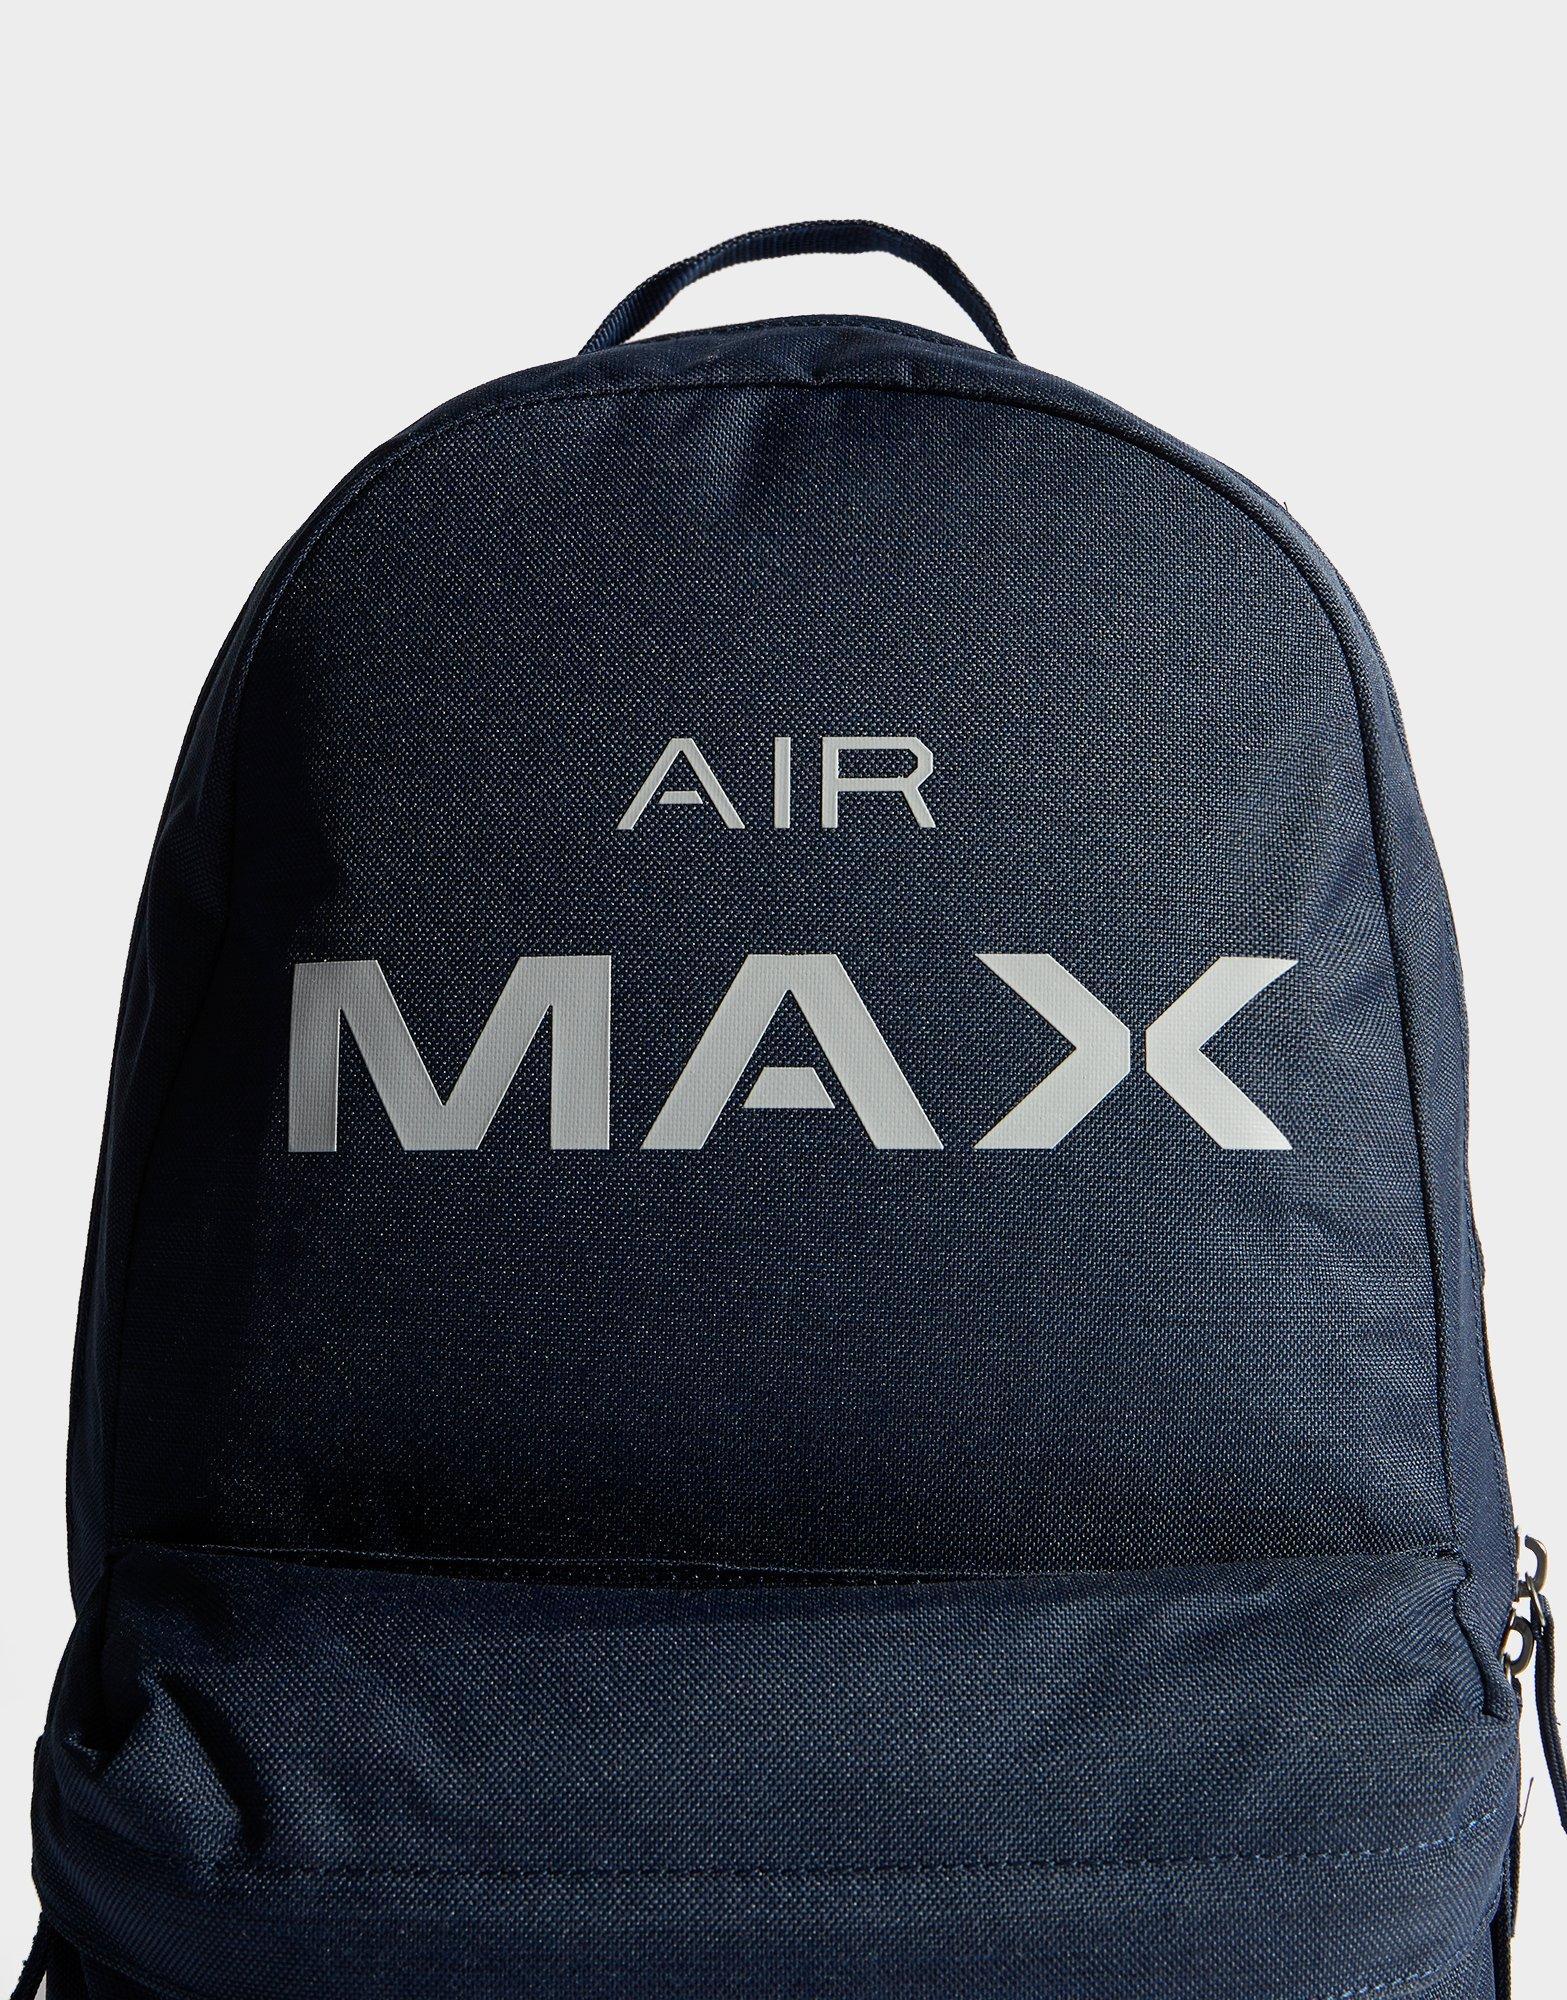 air max rucksack